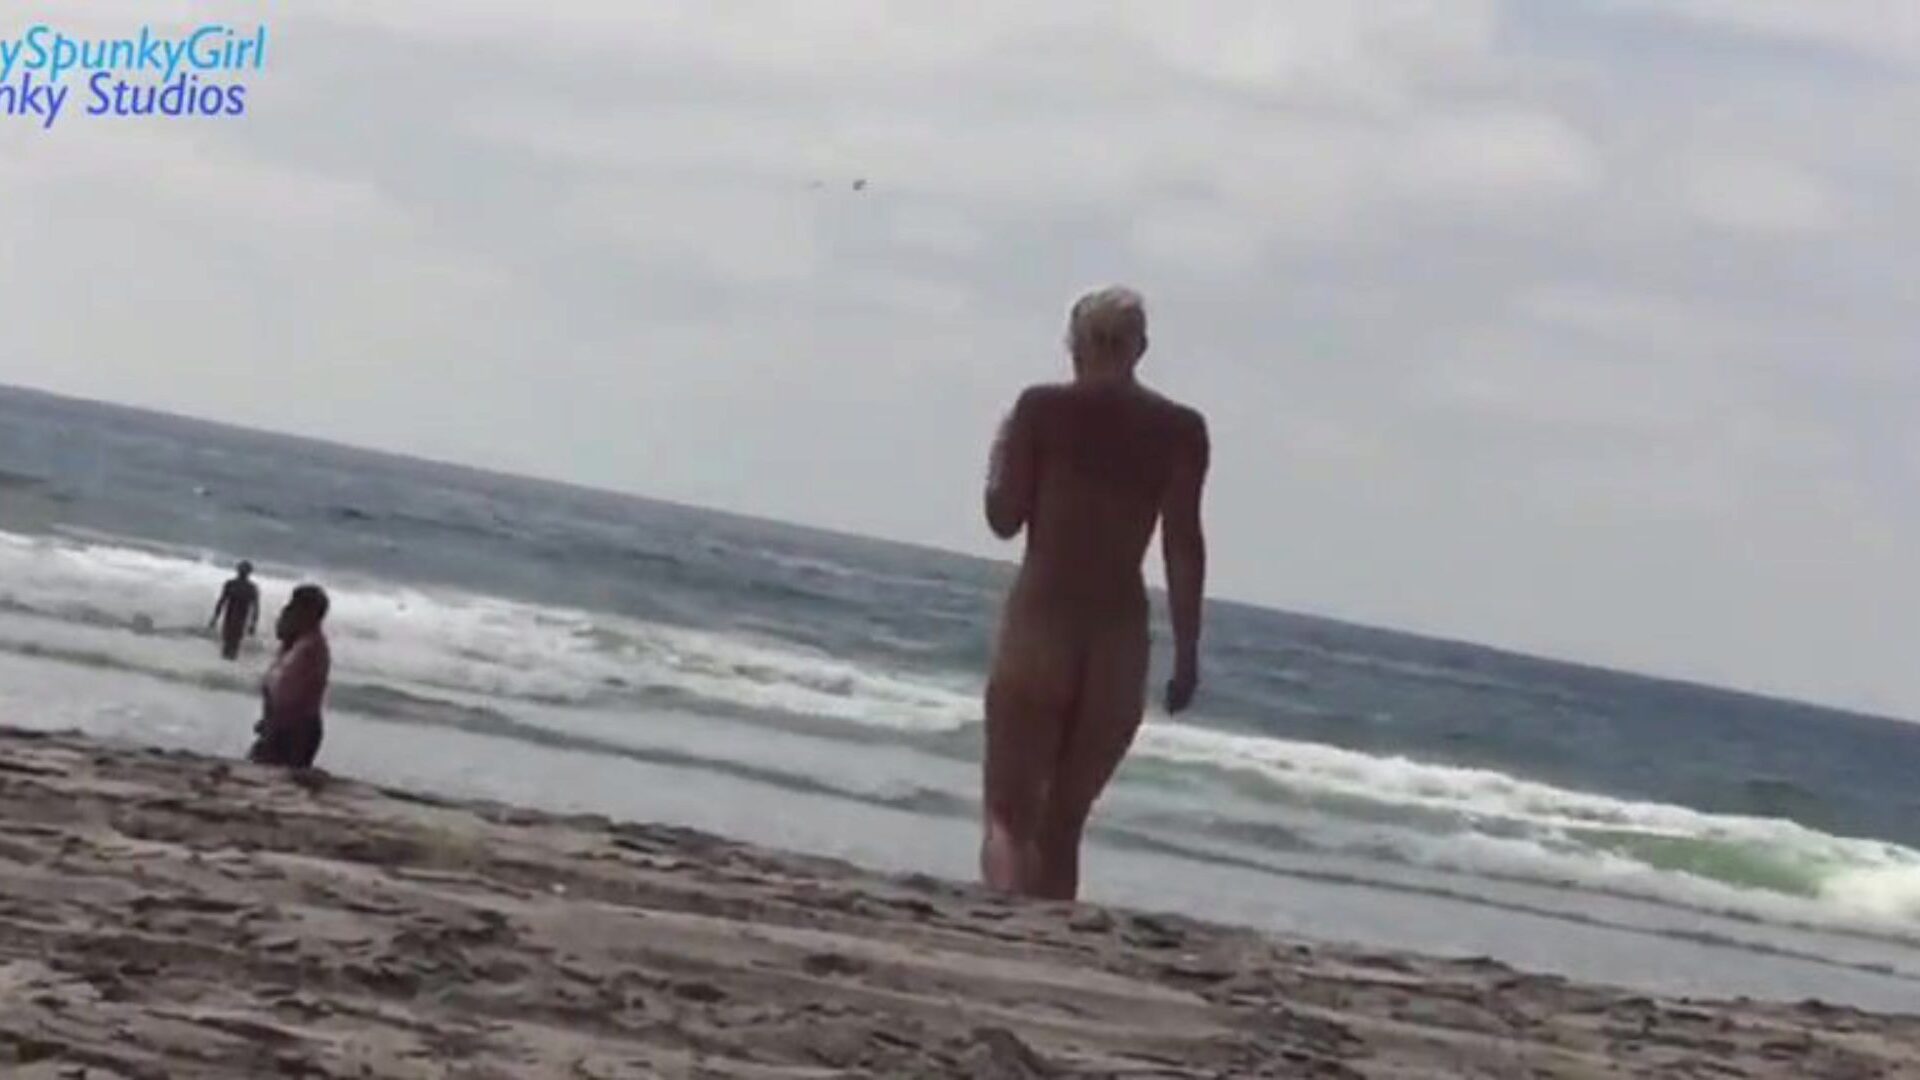 Weenie sucking on the beach